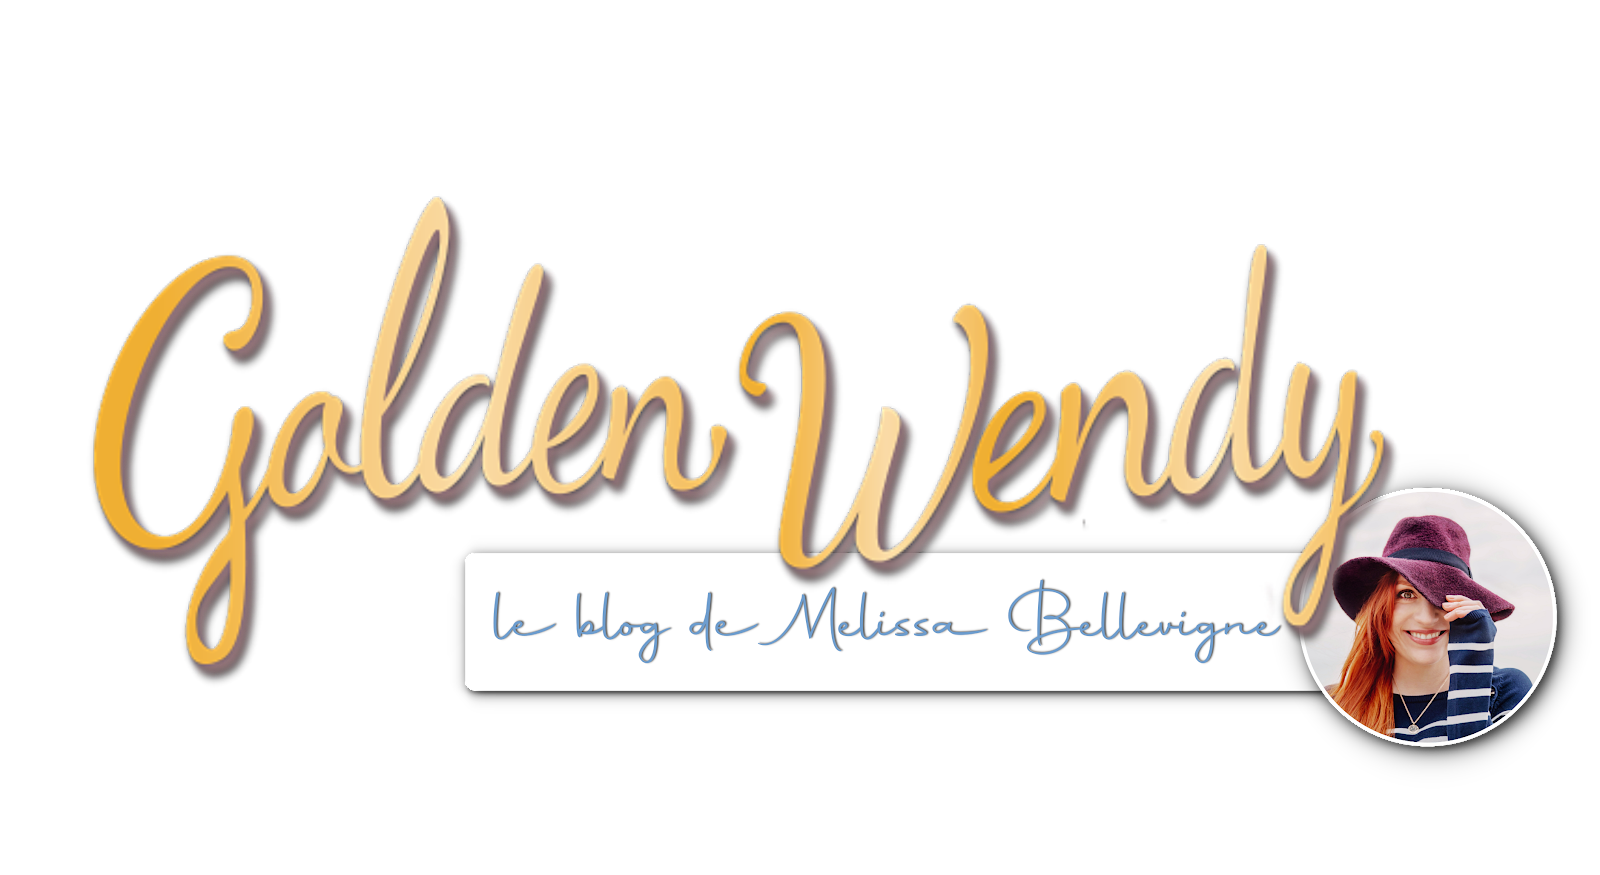 Golden Wendy - Le Blog